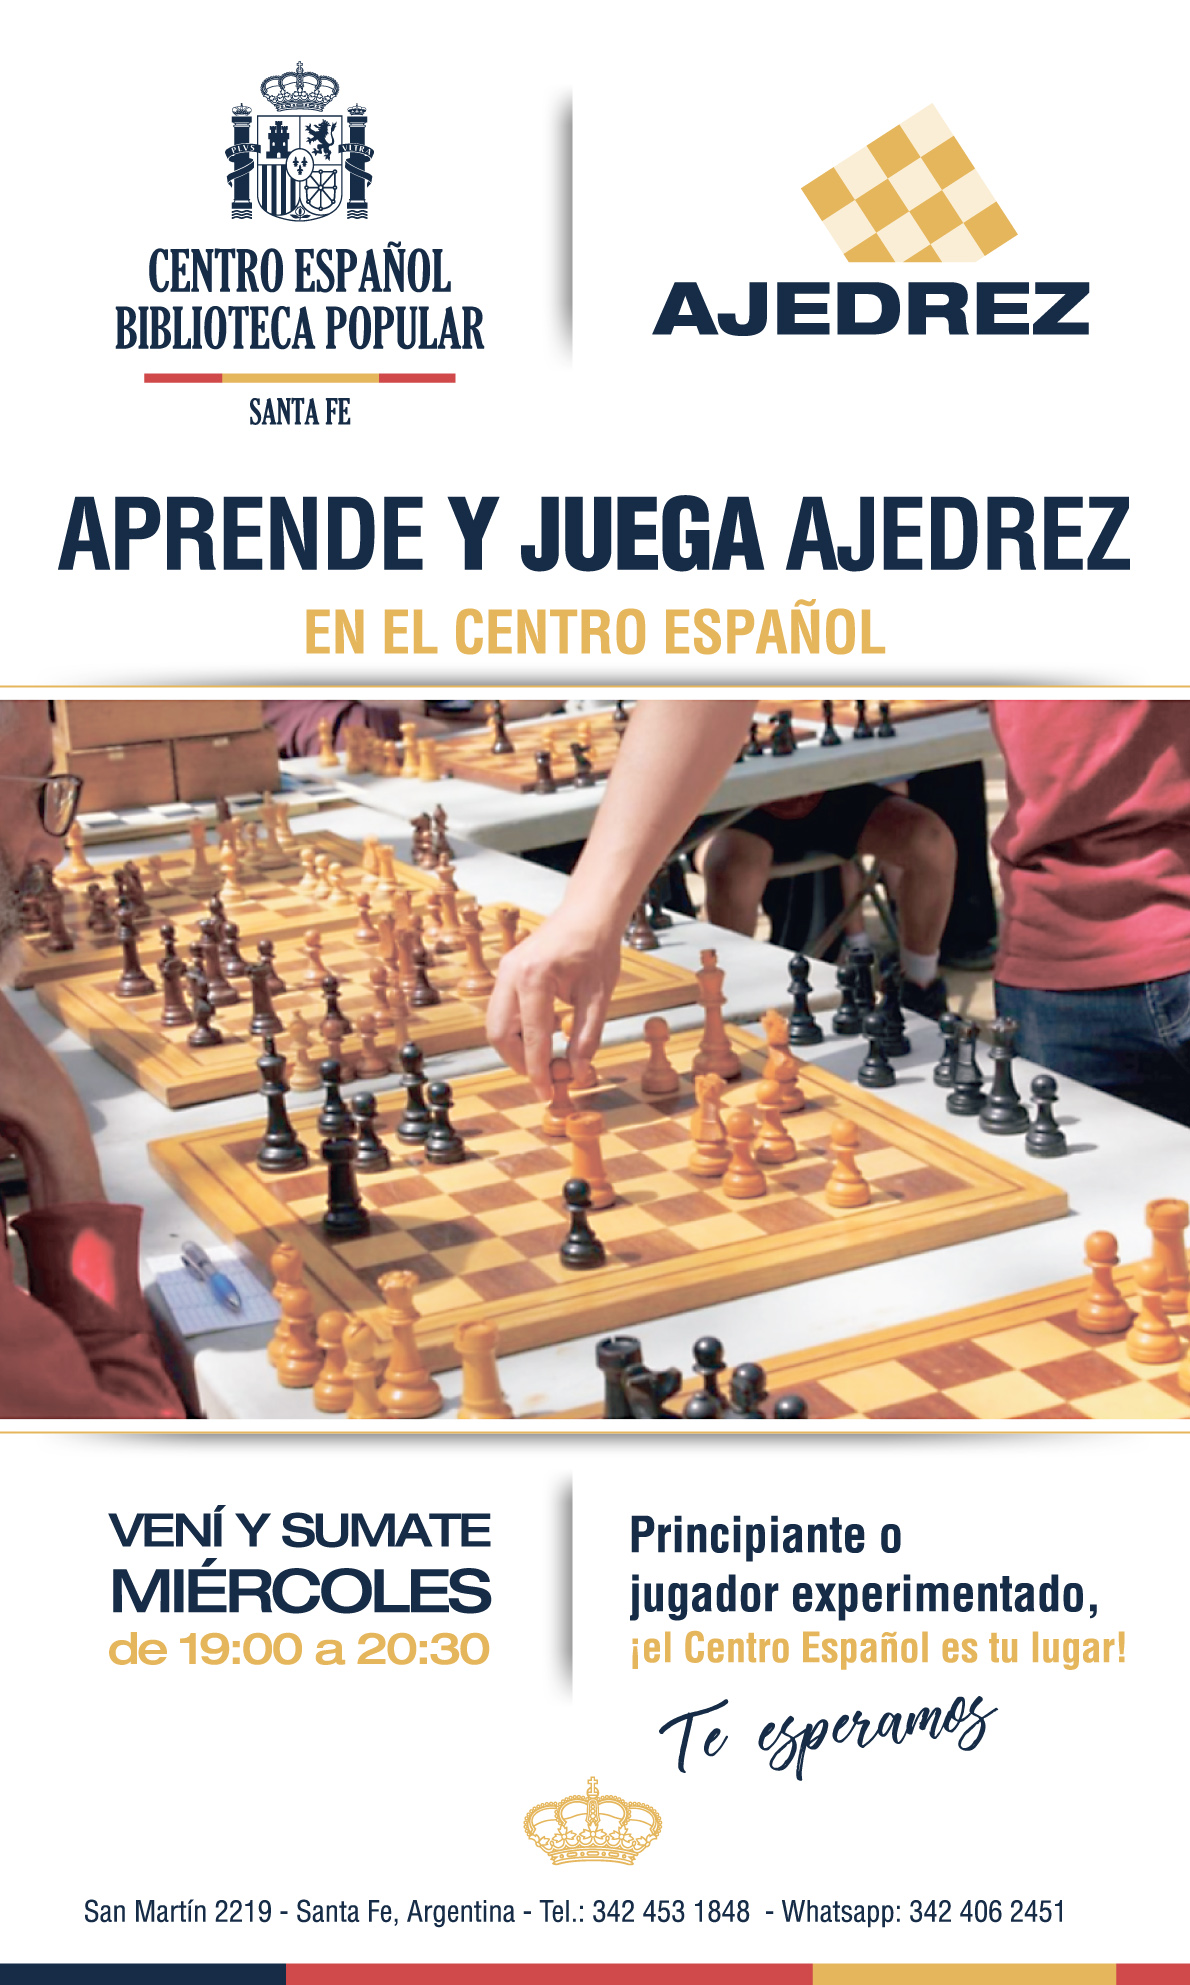 Ajedrez - Centro Español y Biblioteca Popular